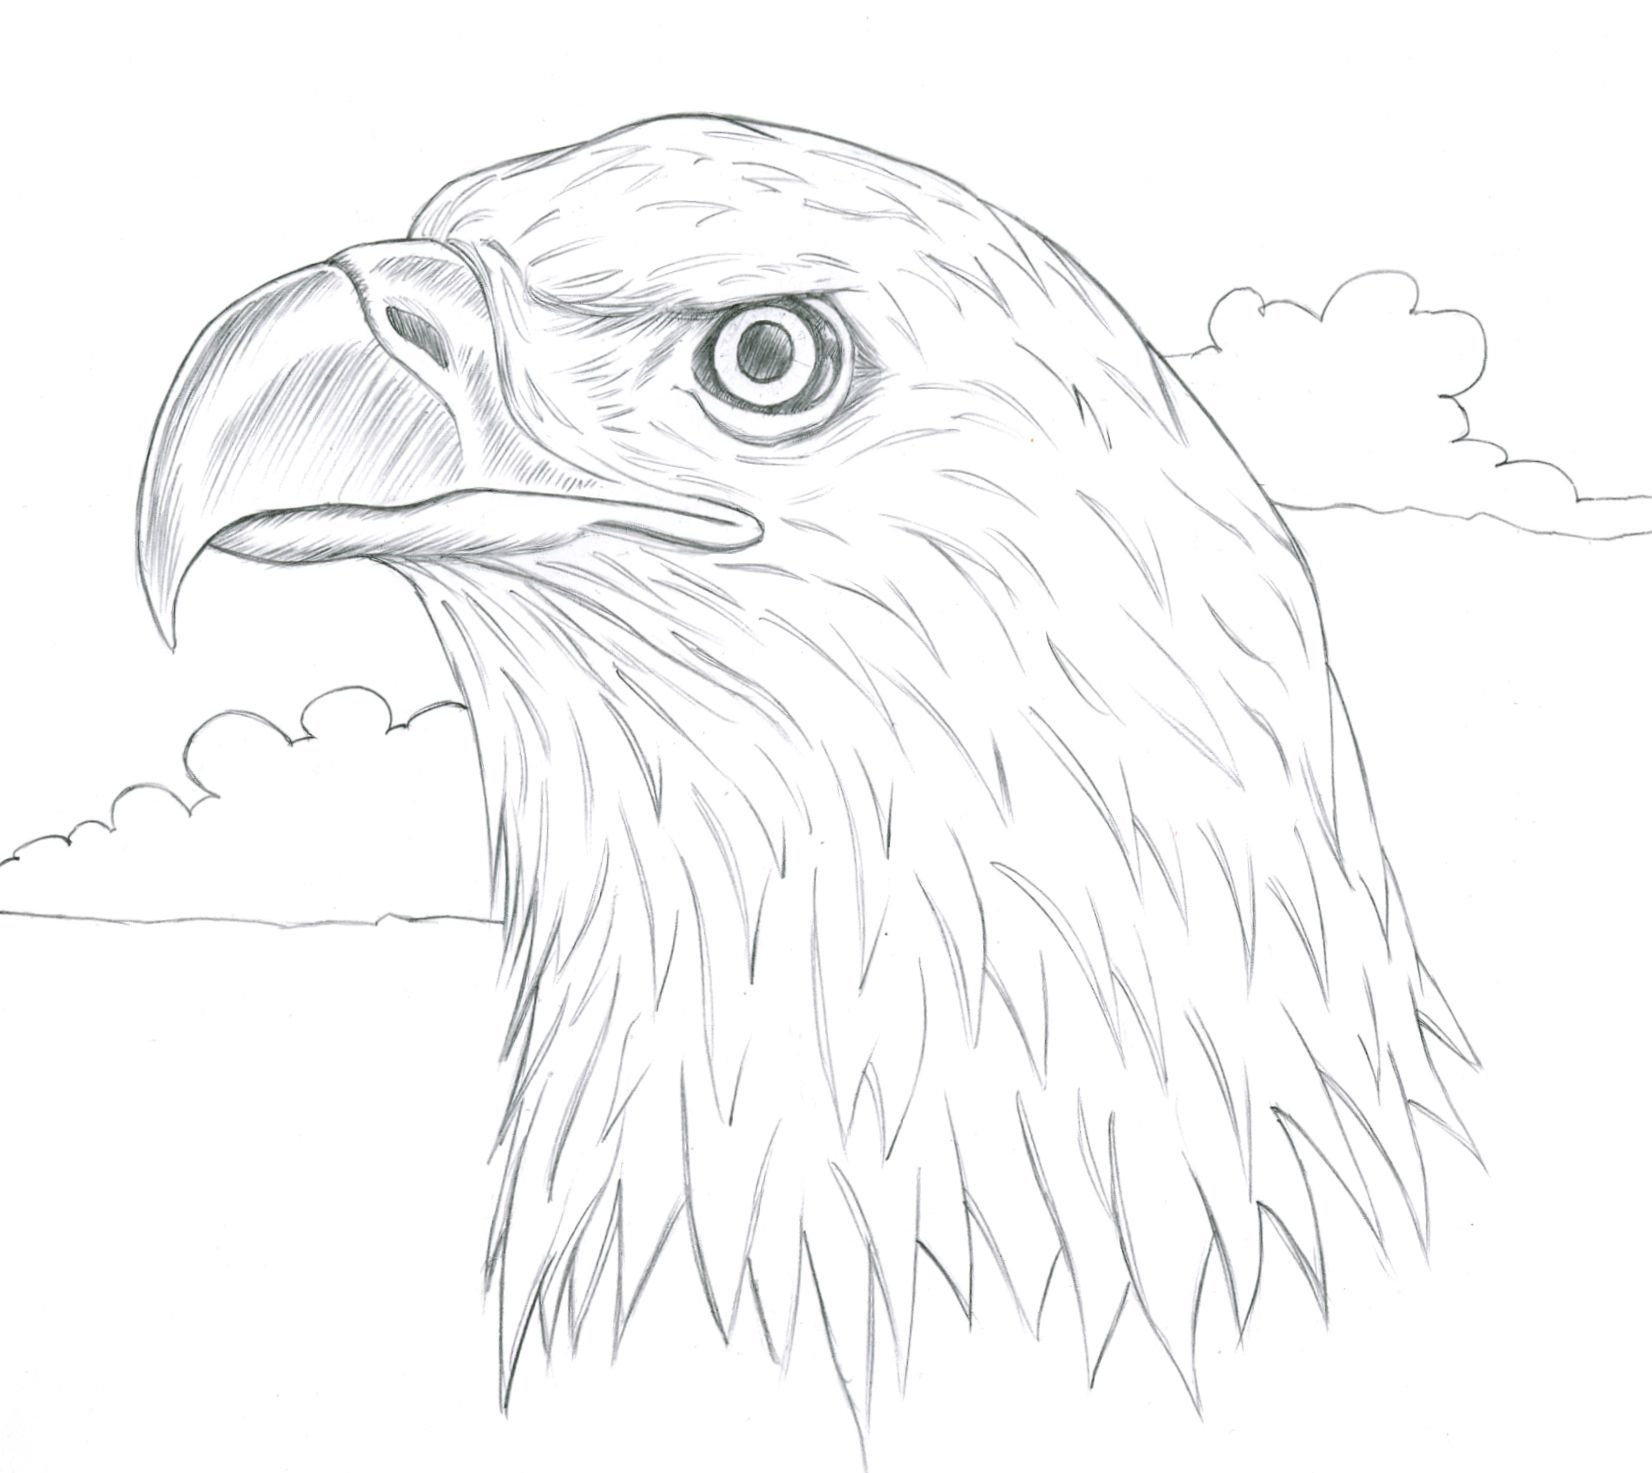 Как нарисовать орла поэтапно карандашом - три мастер-класса разной сложности. как нарисовать голову орла карандашом поэтапно